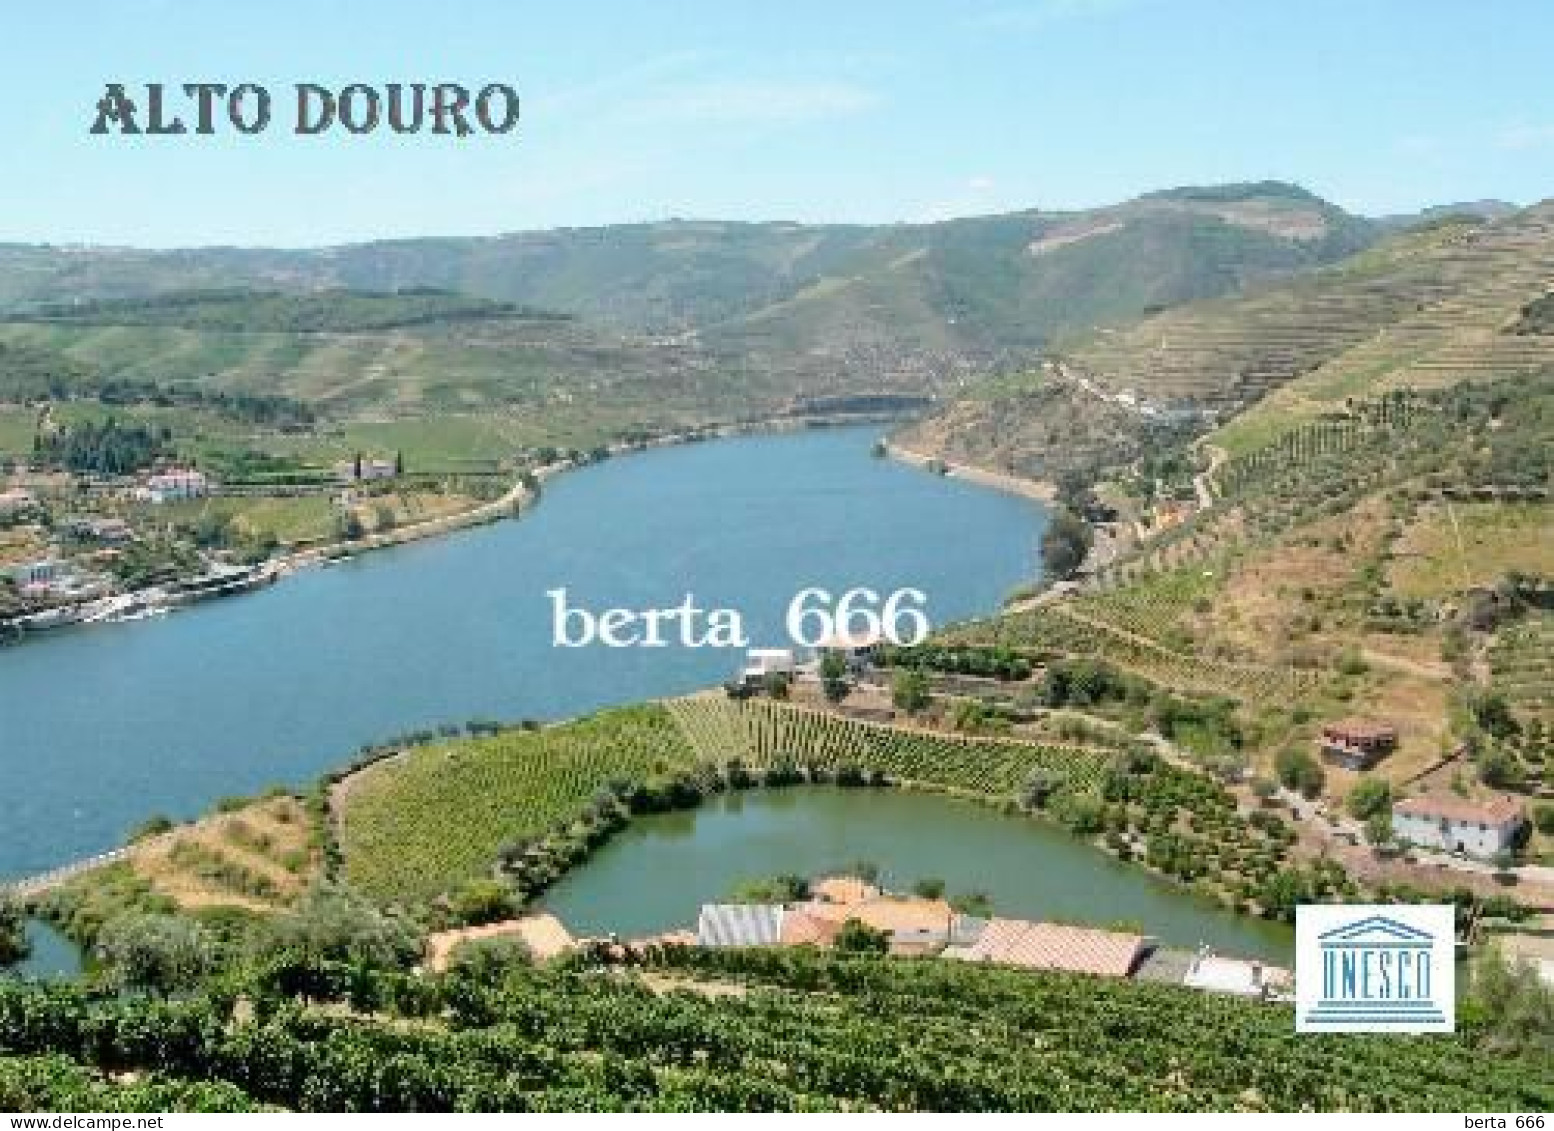 Portugal Alto Douro Wine Region UNESCO New Postcard - Vila Real